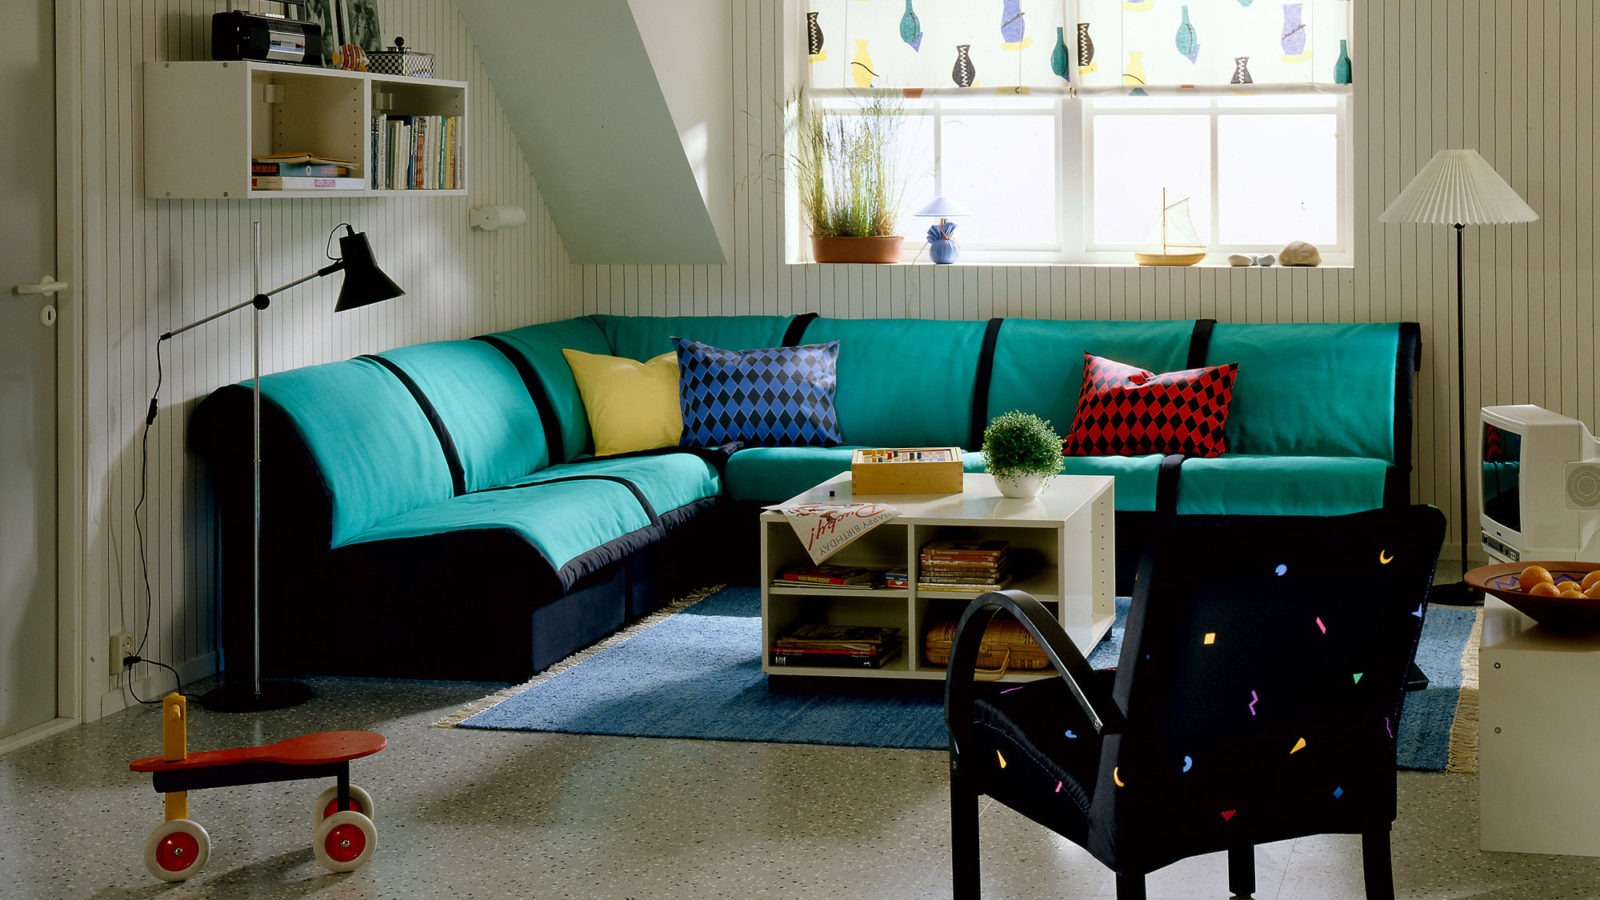 Pièce claire avec canapé bleu et vert modulable modèle LEXBY, positionné en angle. Textiles à motifs colorés.